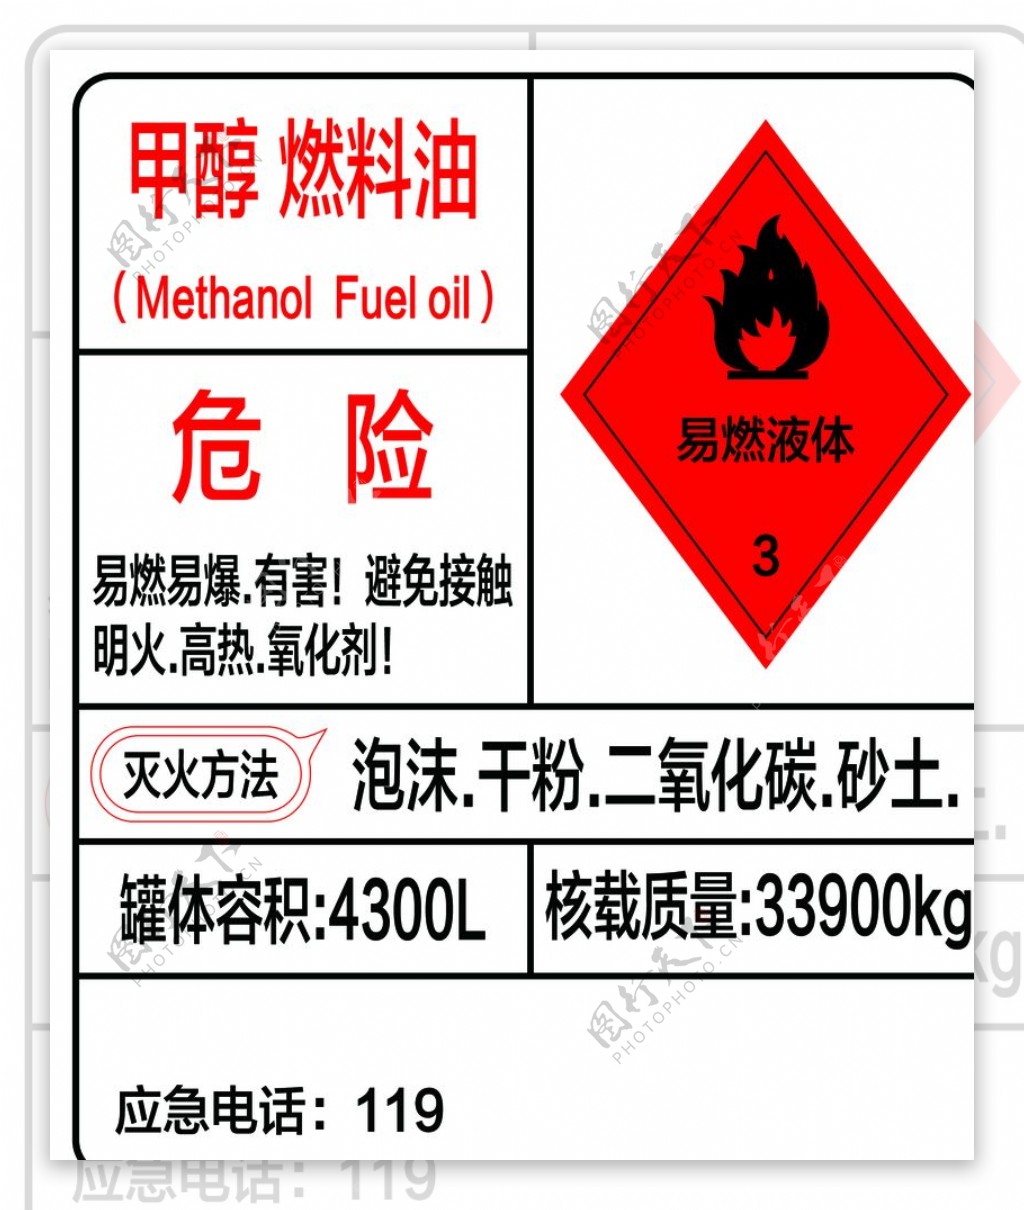 甲醇燃料油图片